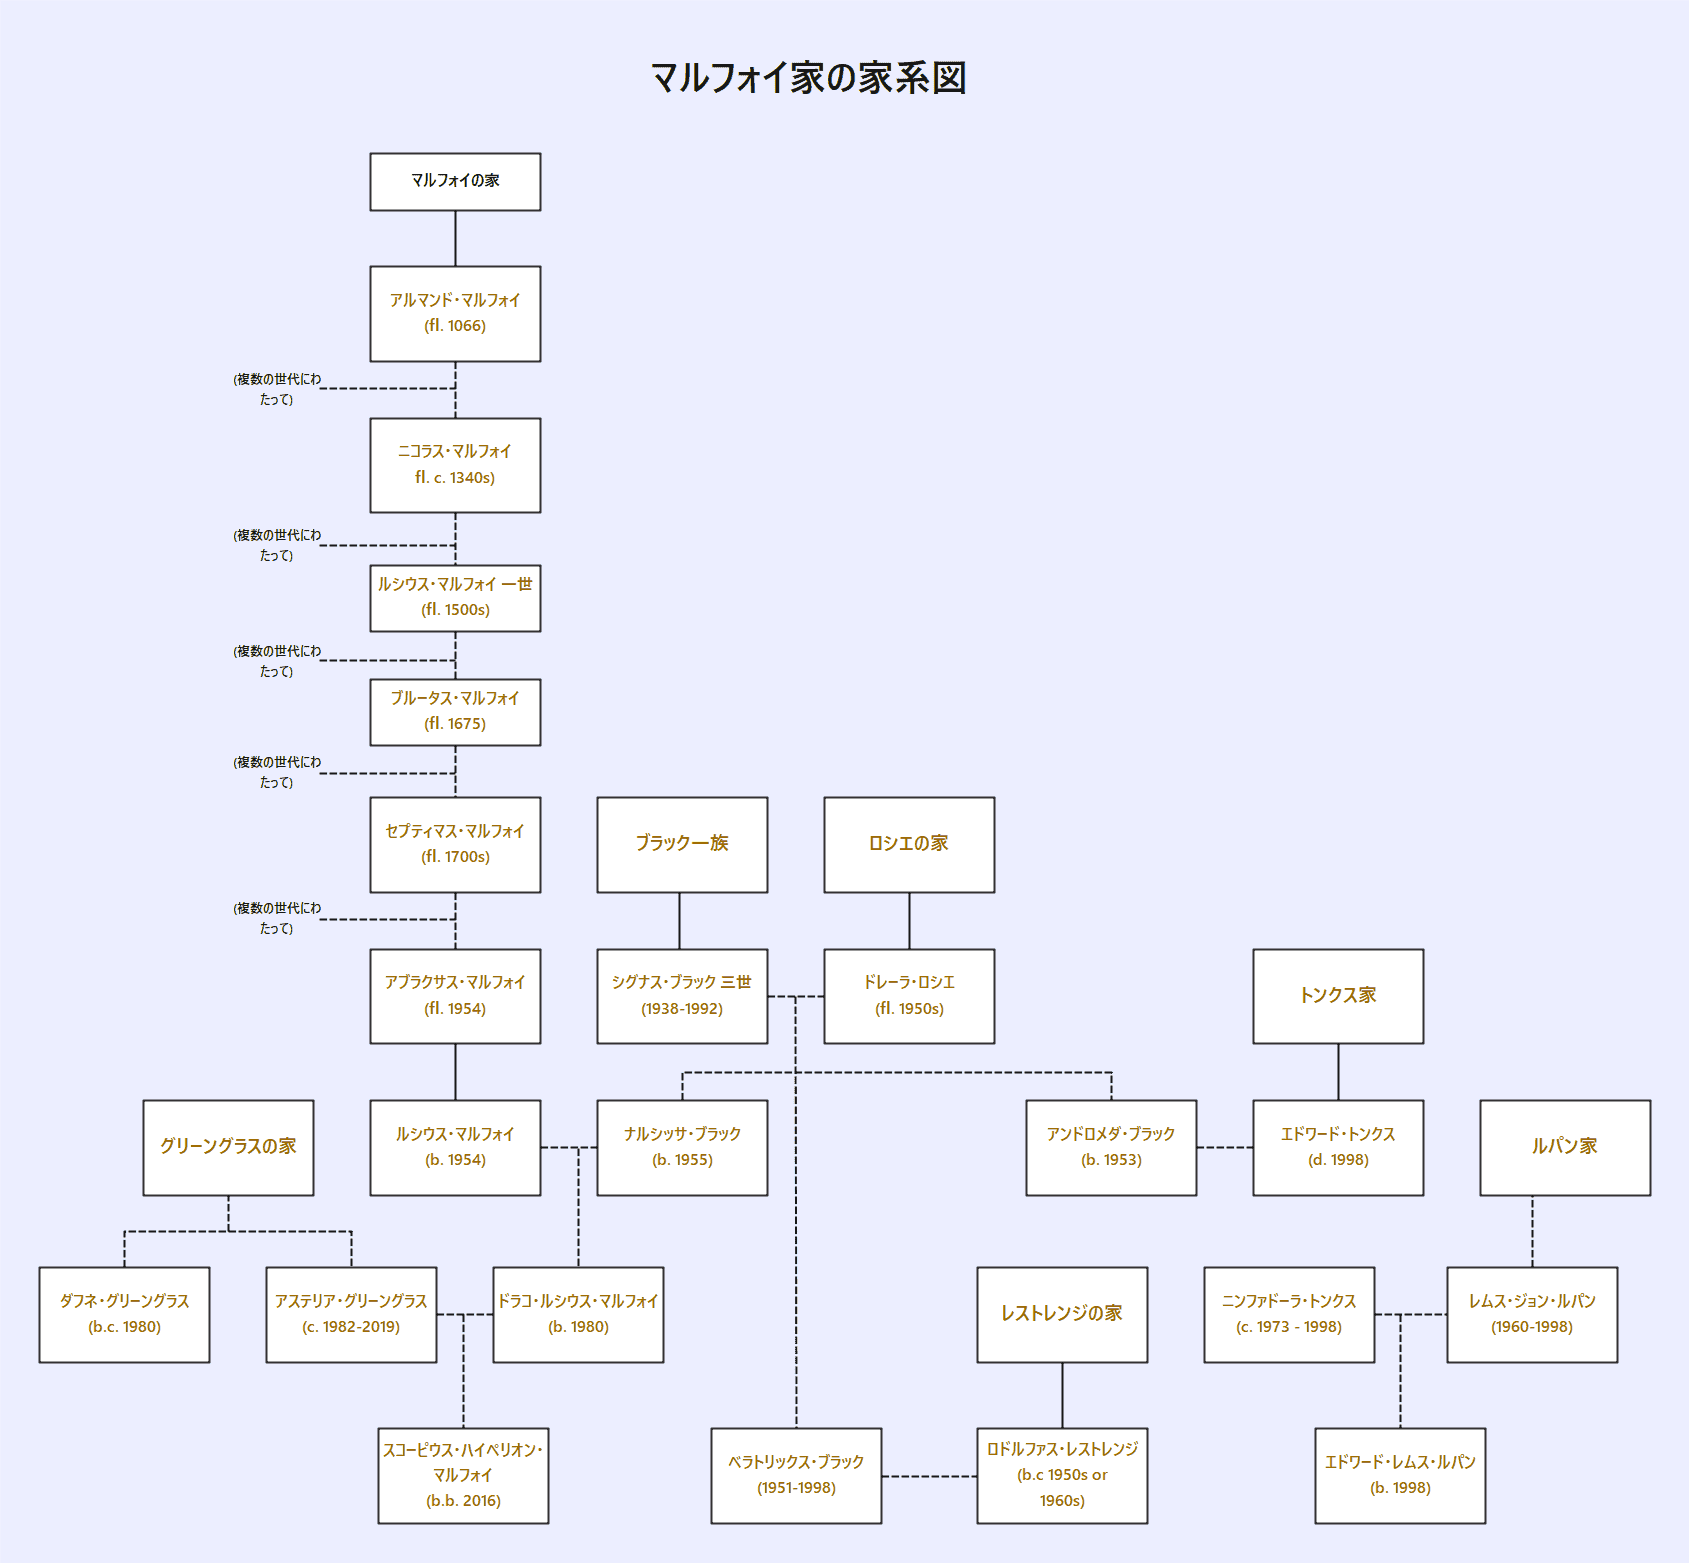 マルフォイ家の家系図